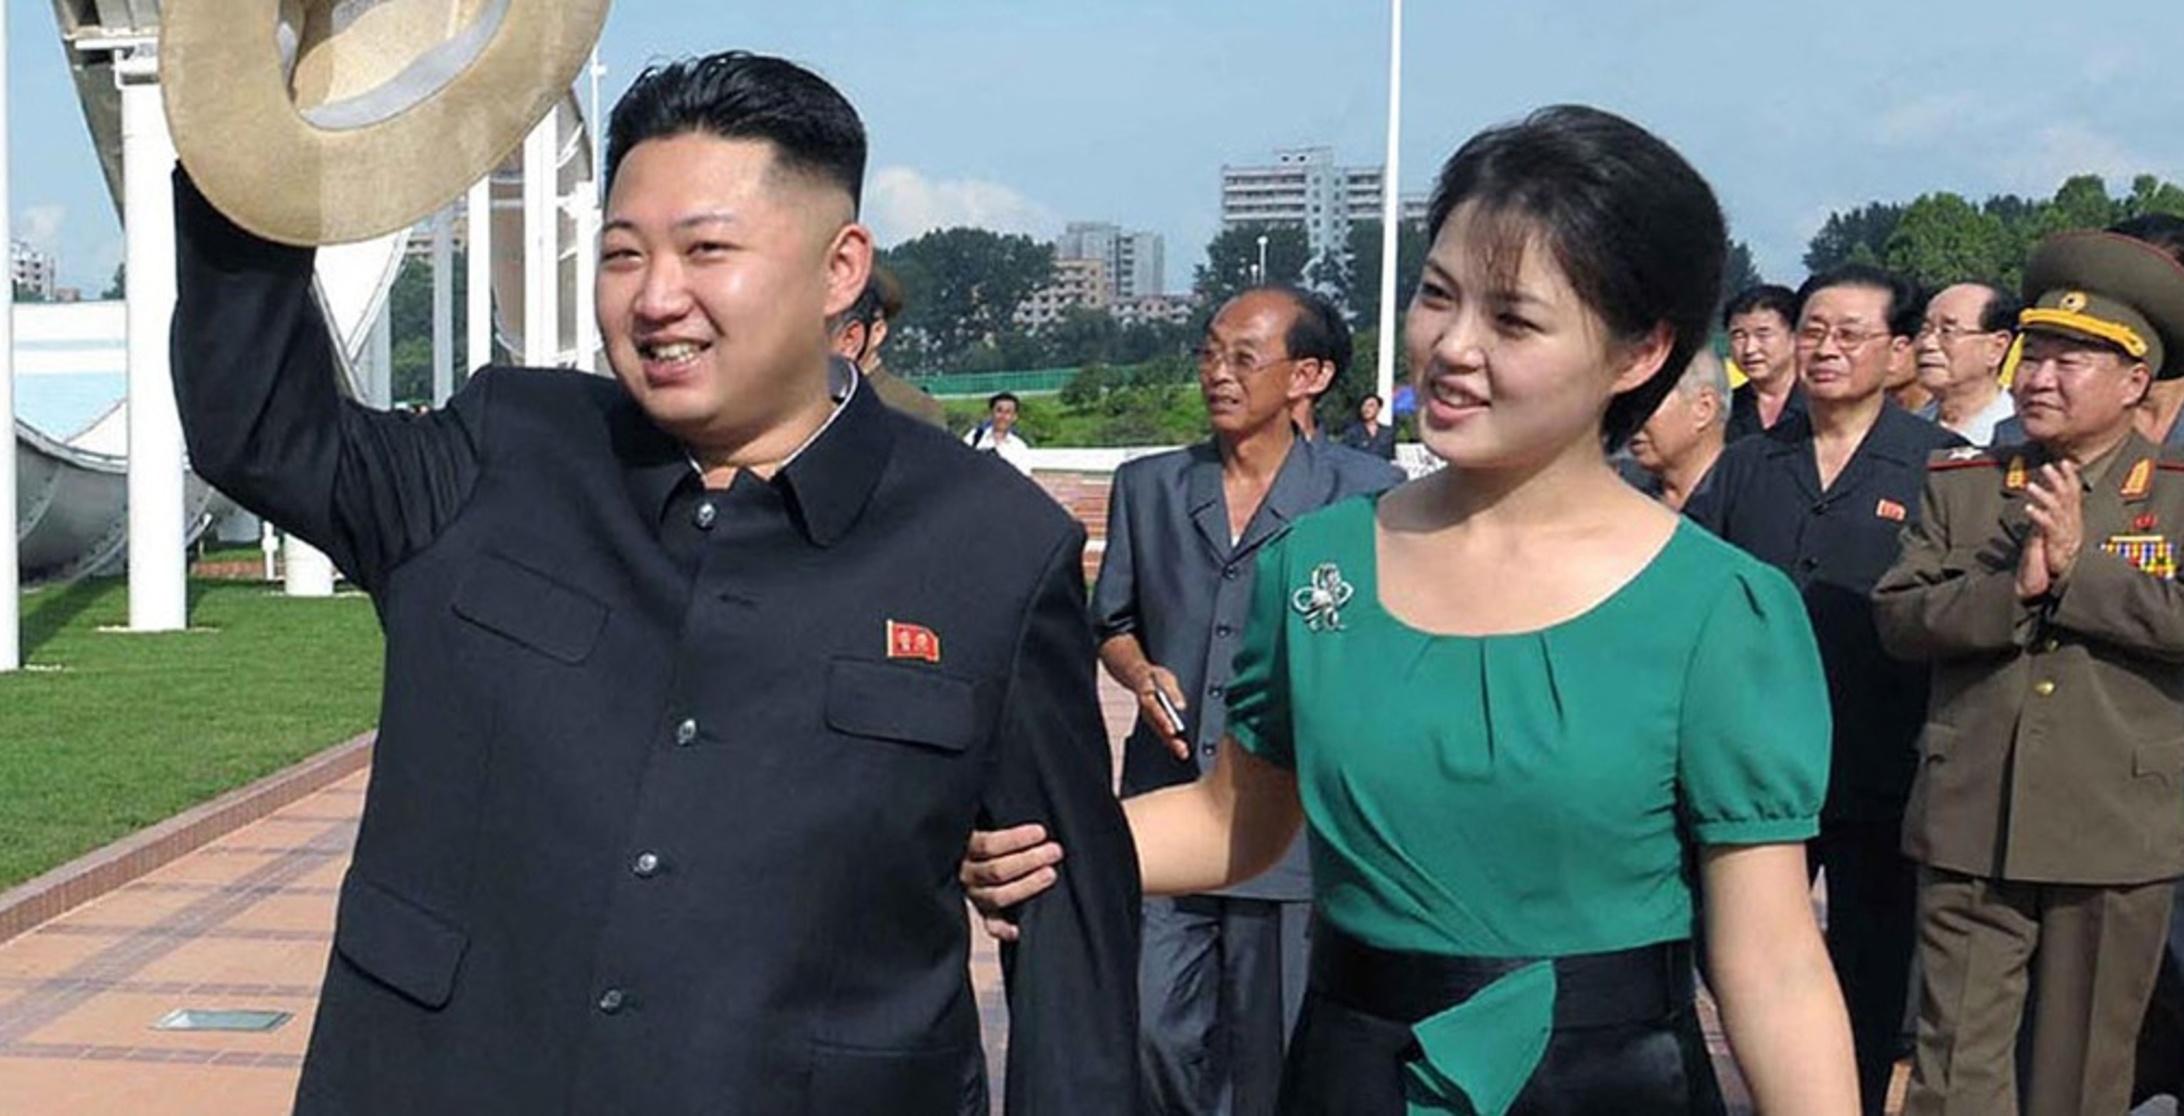 La esposa del lider coreano